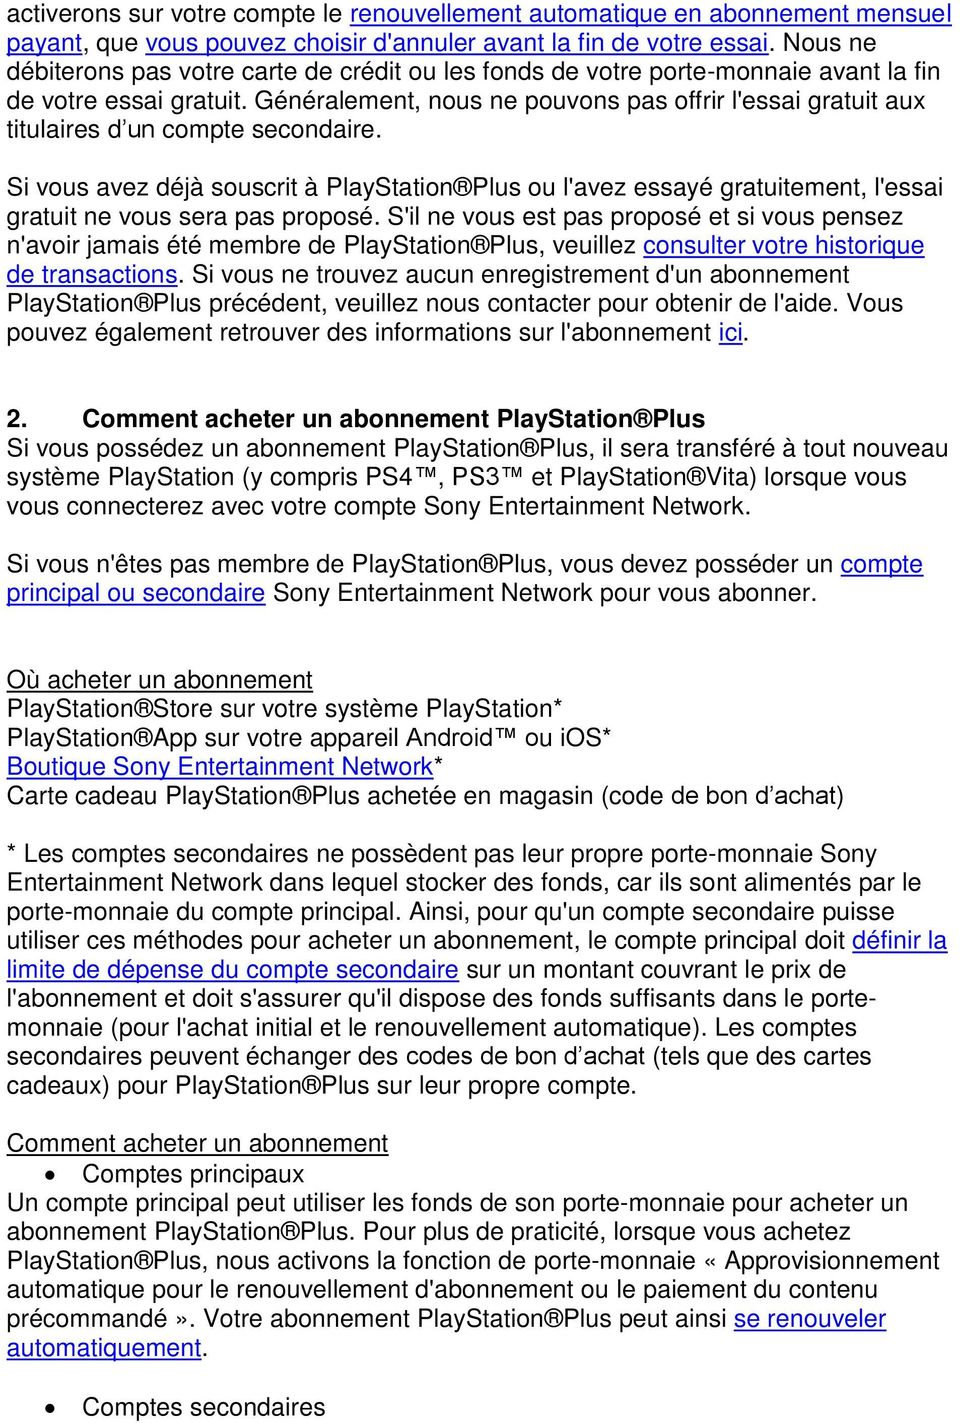 PlayStation Plus est disponible à l'achat dans tous les pays ayant accès à  PlayStation Store. - PDF Téléchargement Gratuit